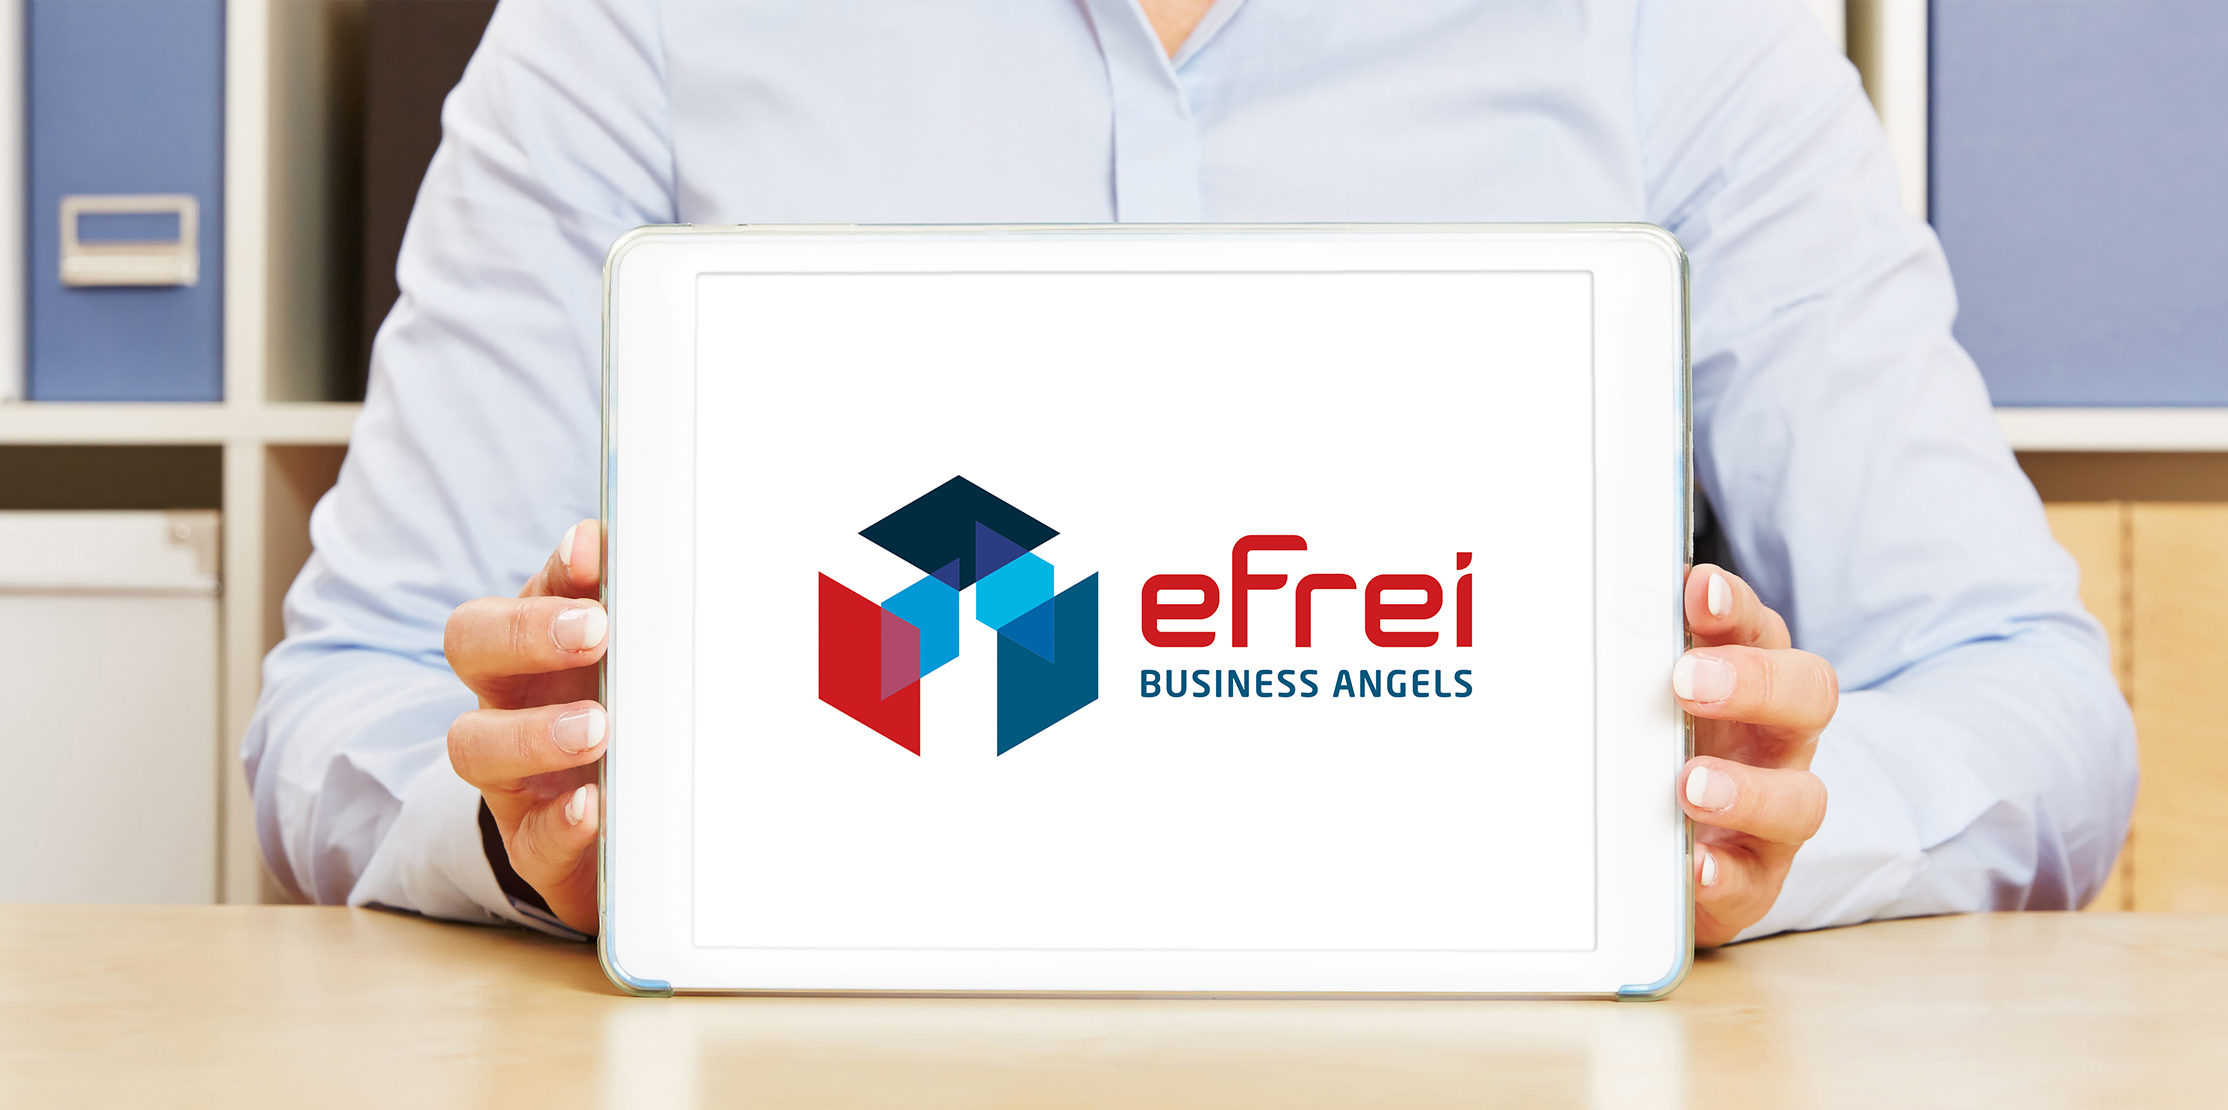 Logo - Efrei business angels - Efrei - Ecole d'ingénieurs informatique